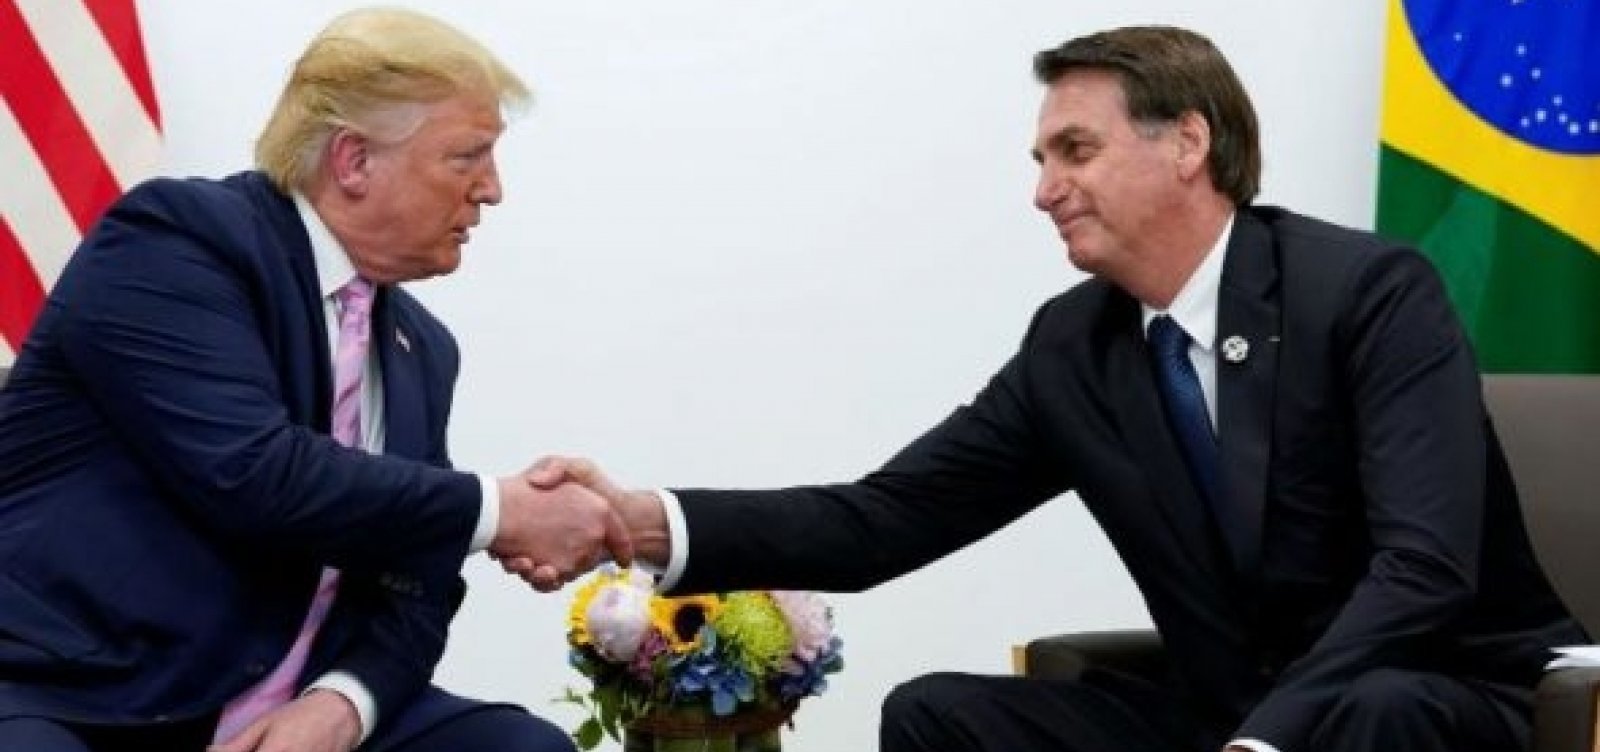 Promessa de ‘afagos’ teria convencido Bolsonaro a aceitar jantar com Trump